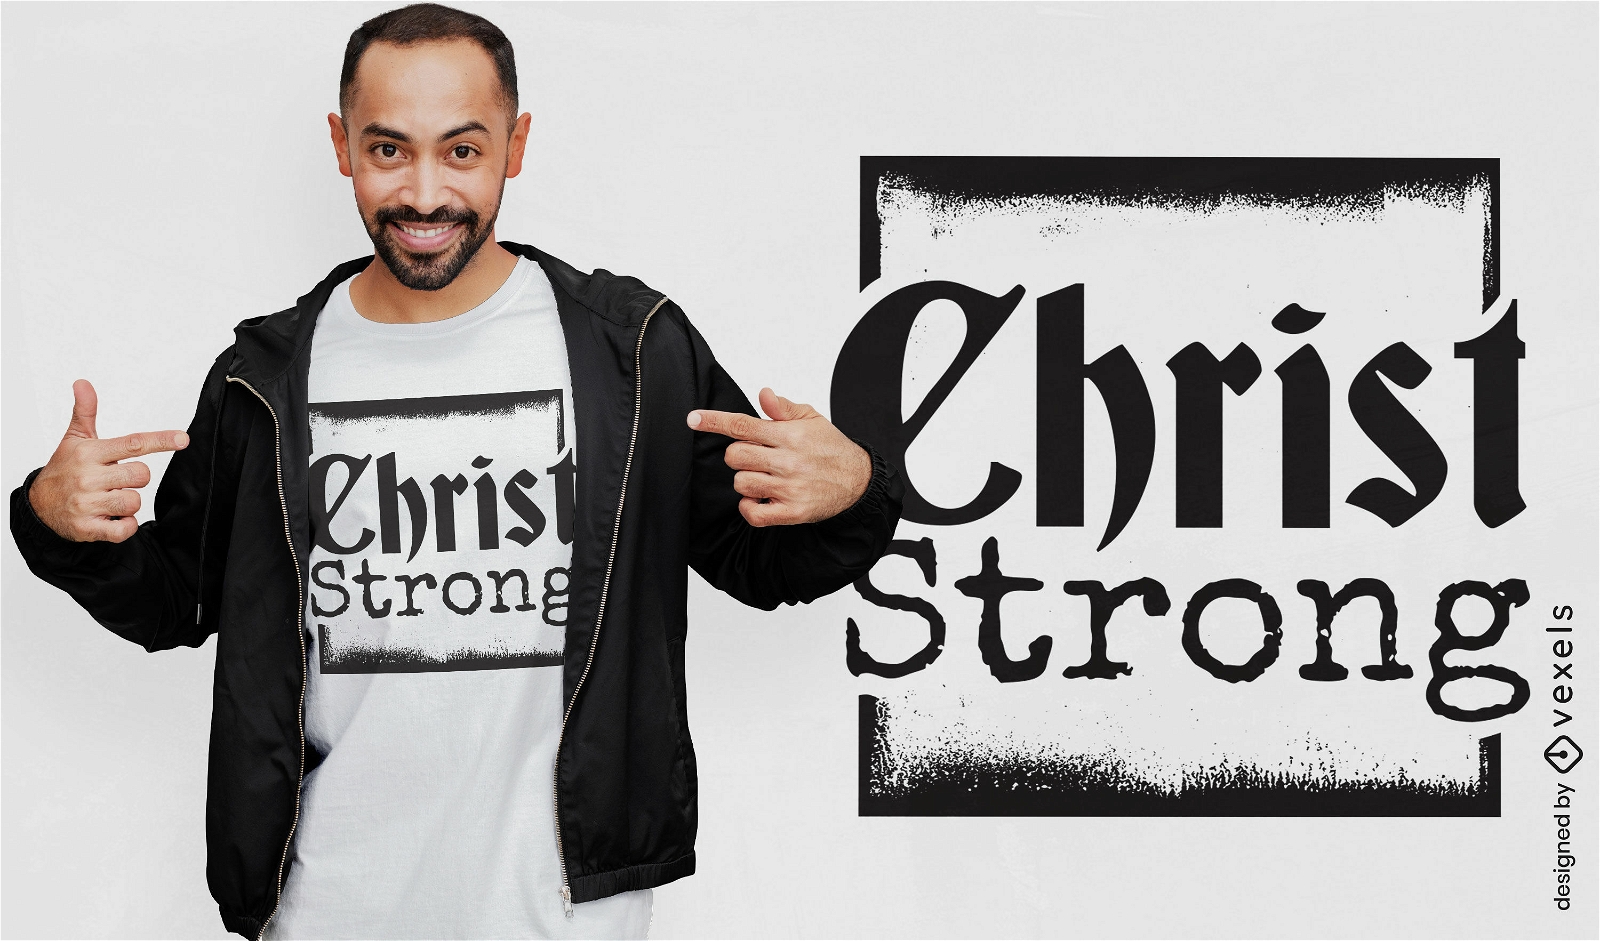 T-Shirt-Design mit starkem Zitat von Christus